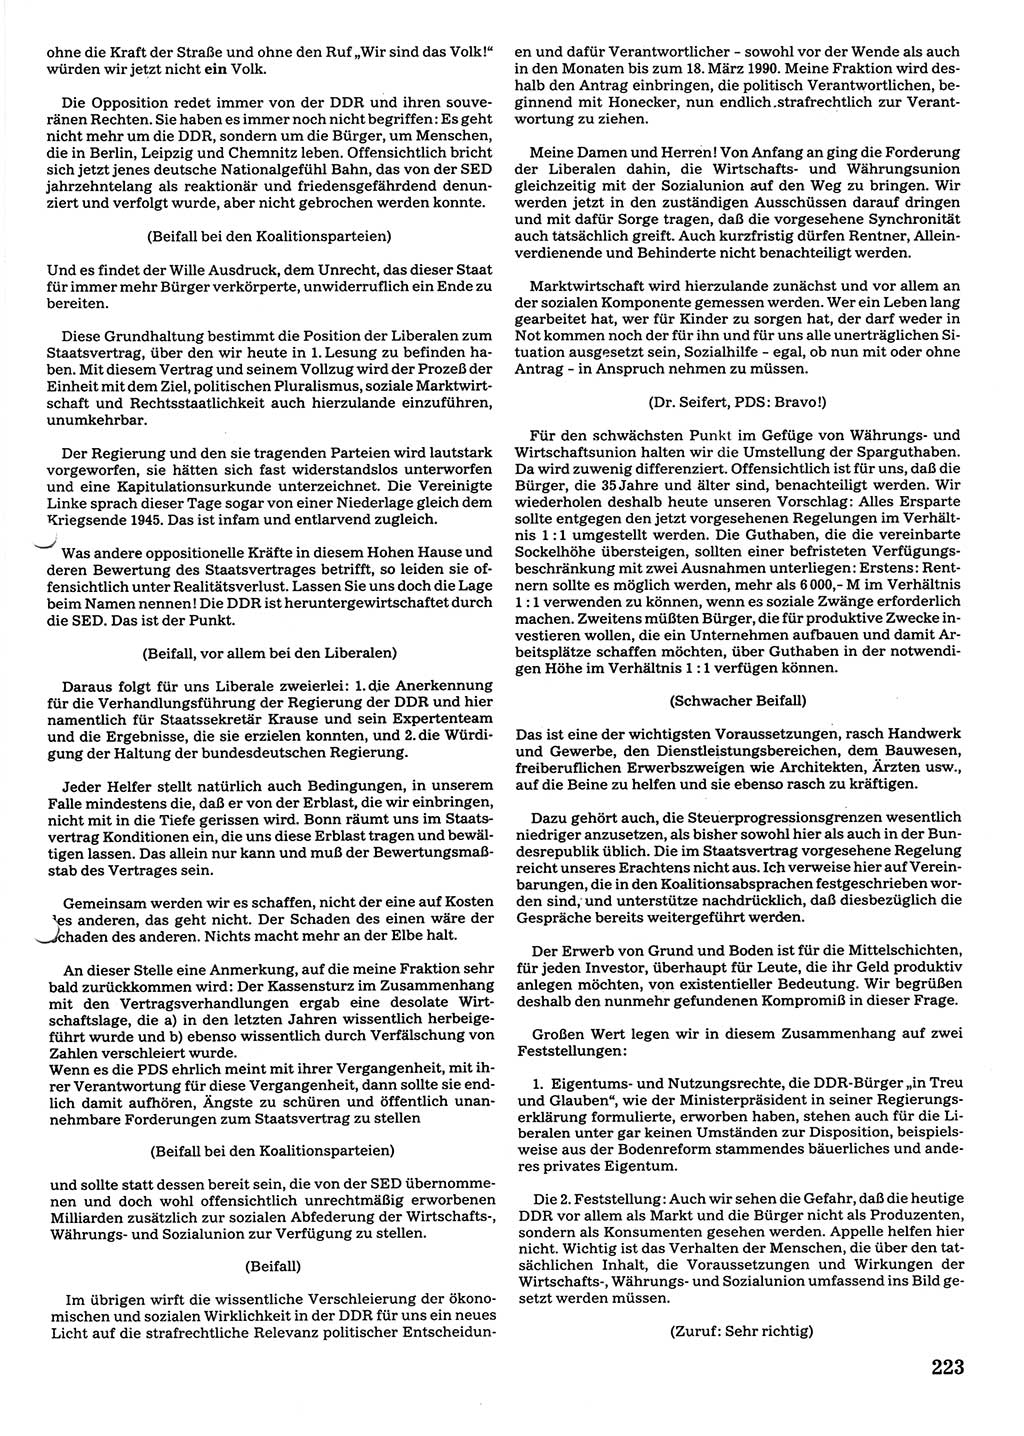 Tagungen der Volkskammer (VK) der Deutschen Demokratischen Republik (DDR), 10. Wahlperiode 1990, Seite 223 (VK. DDR 10. WP. 1990, Prot. Tg. 1-38, 5.4.-2.10.1990, S. 223)